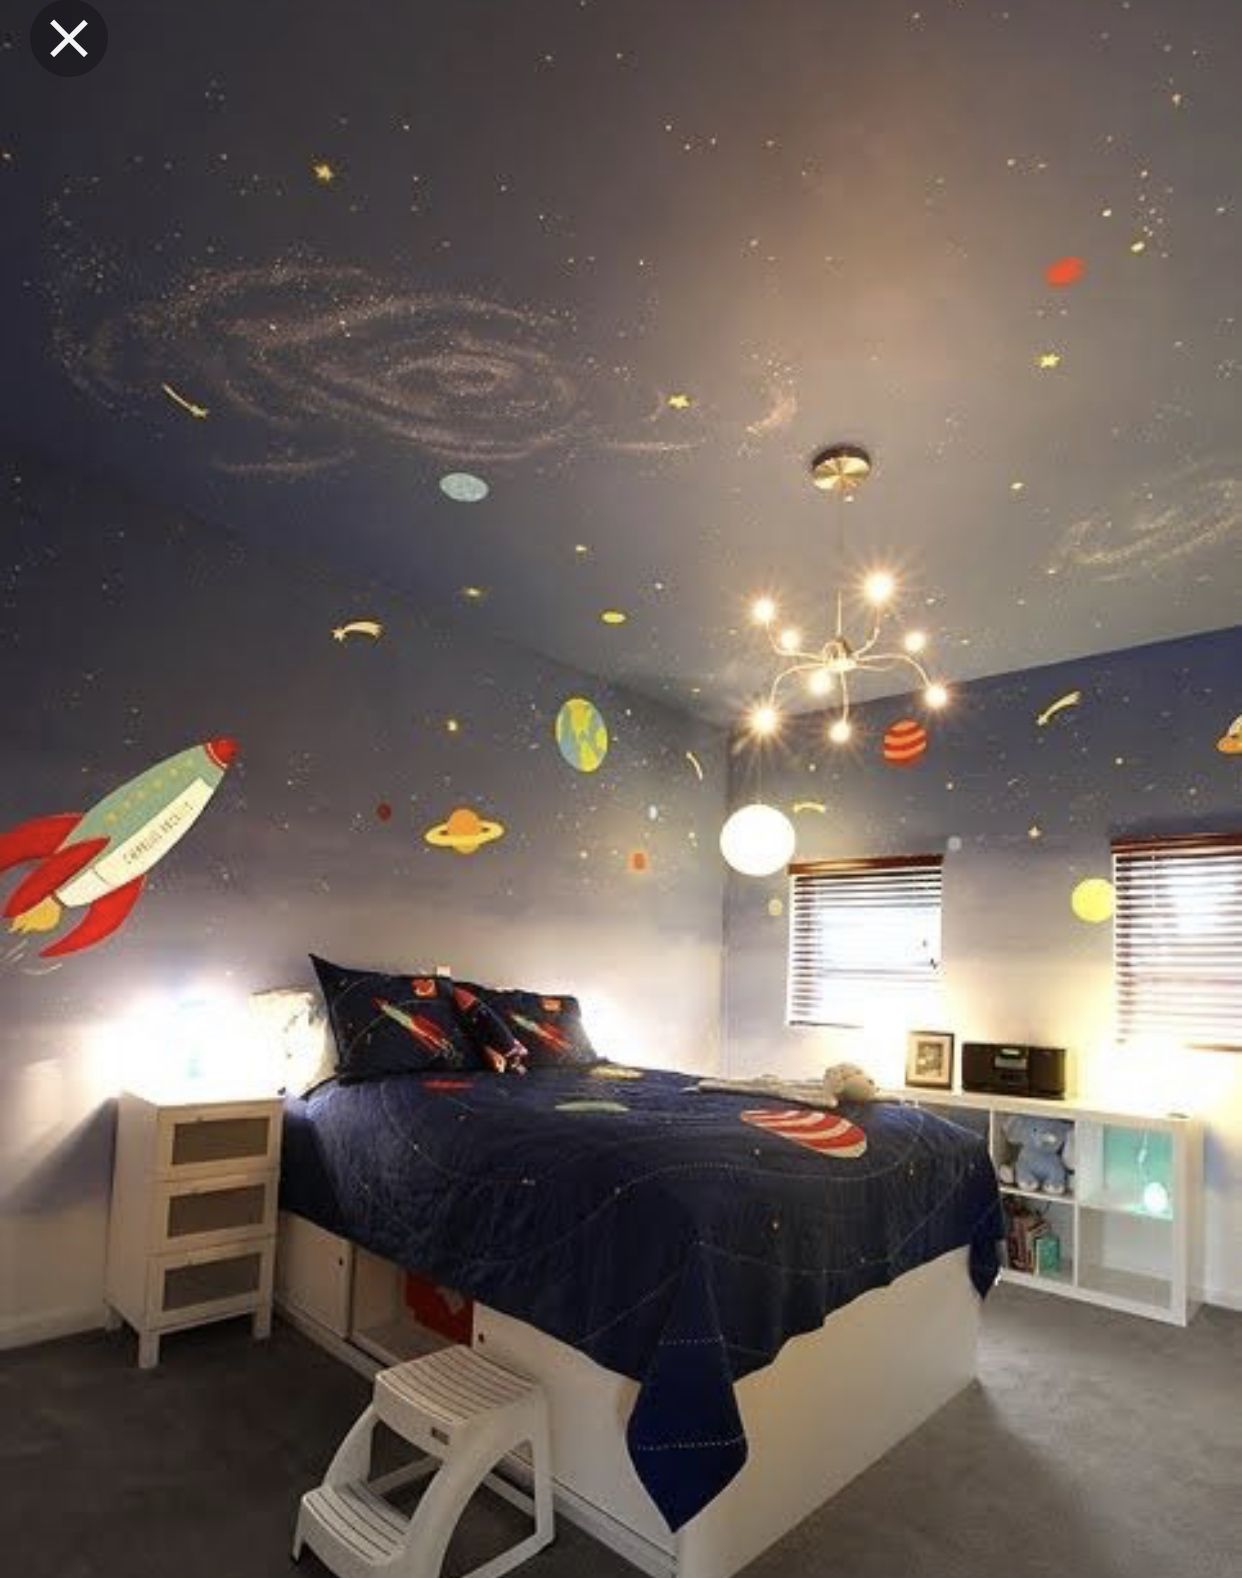 Дизайн комнаты космос: Комната в стиле космос или как впустить .